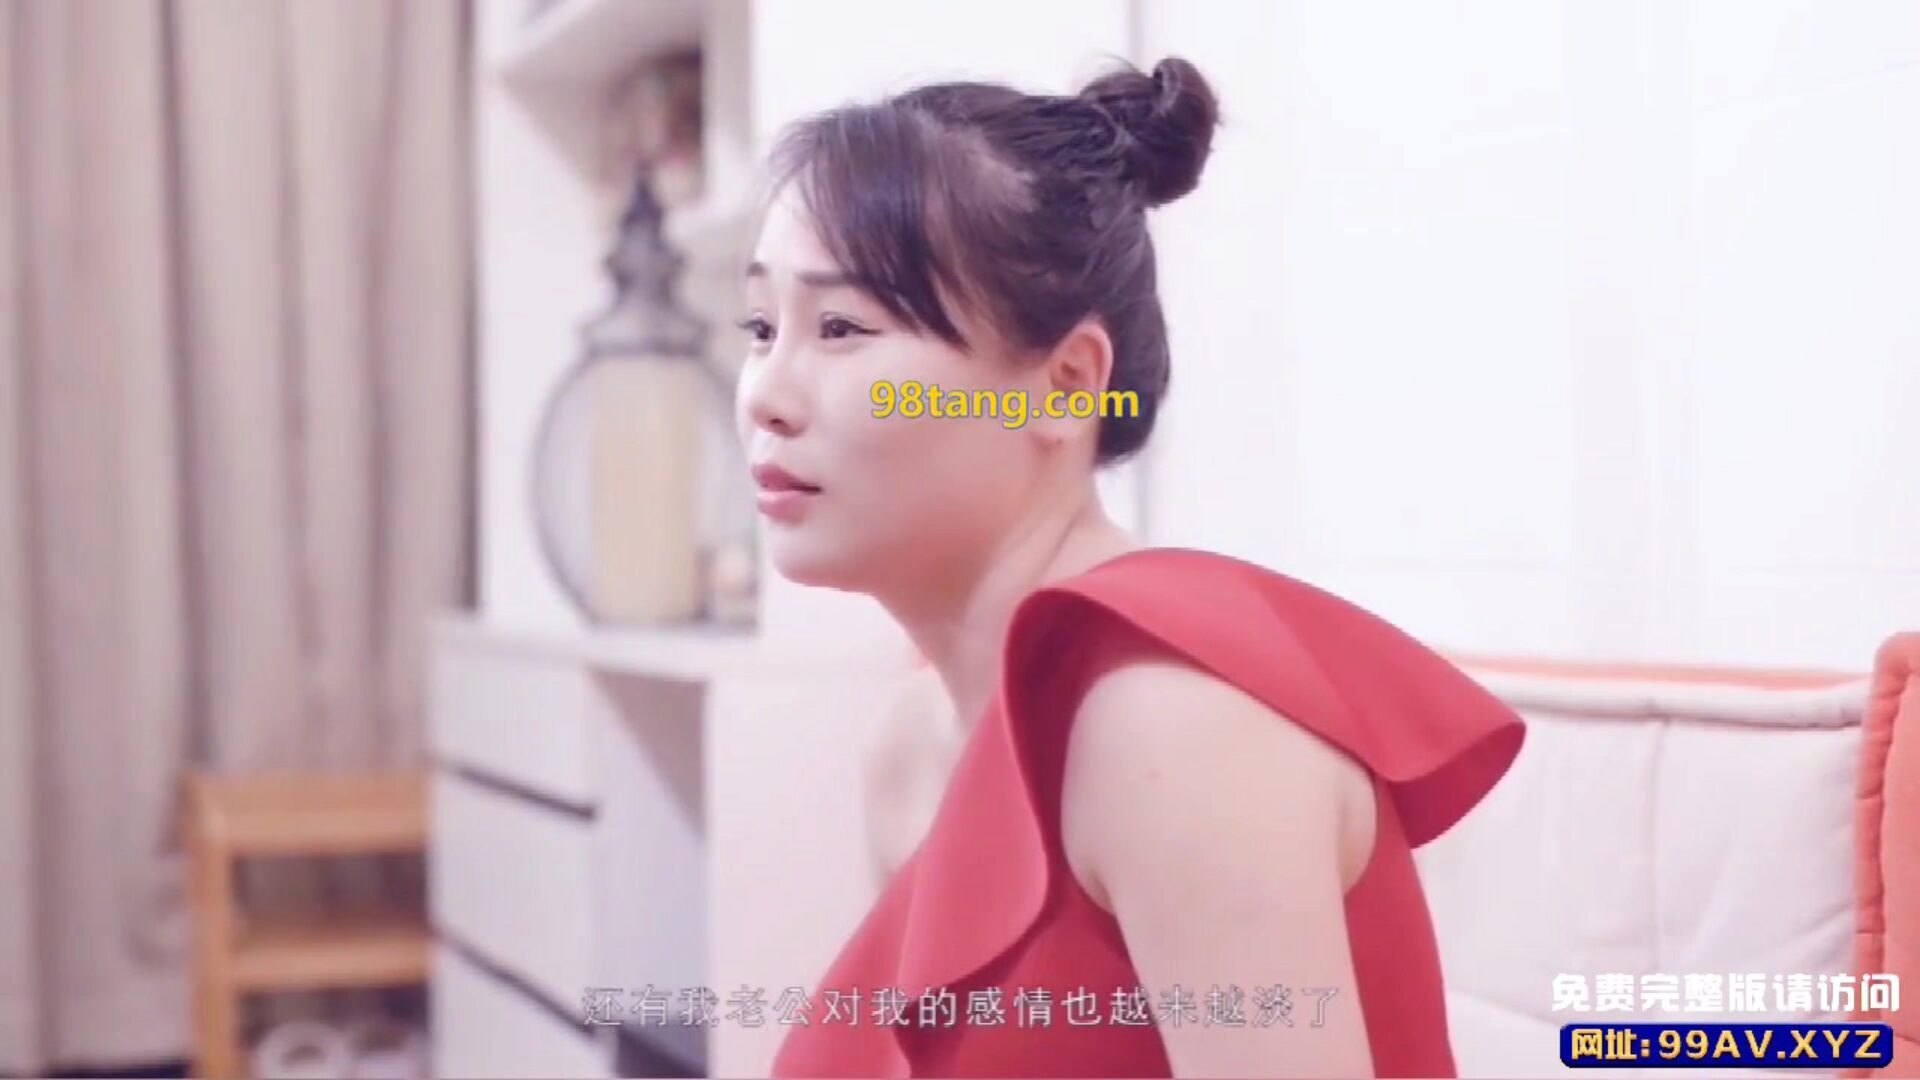 κινέζικα av πορνογραφικά υπνωτιστές νεοσσοί έρχονται στην πόρτα για κινέζικα av πορνογραφικές υπνωτιστές αγαπημένοι έρχονται στην πόρτα για να ζητήσουν να χειριστούν mdcm